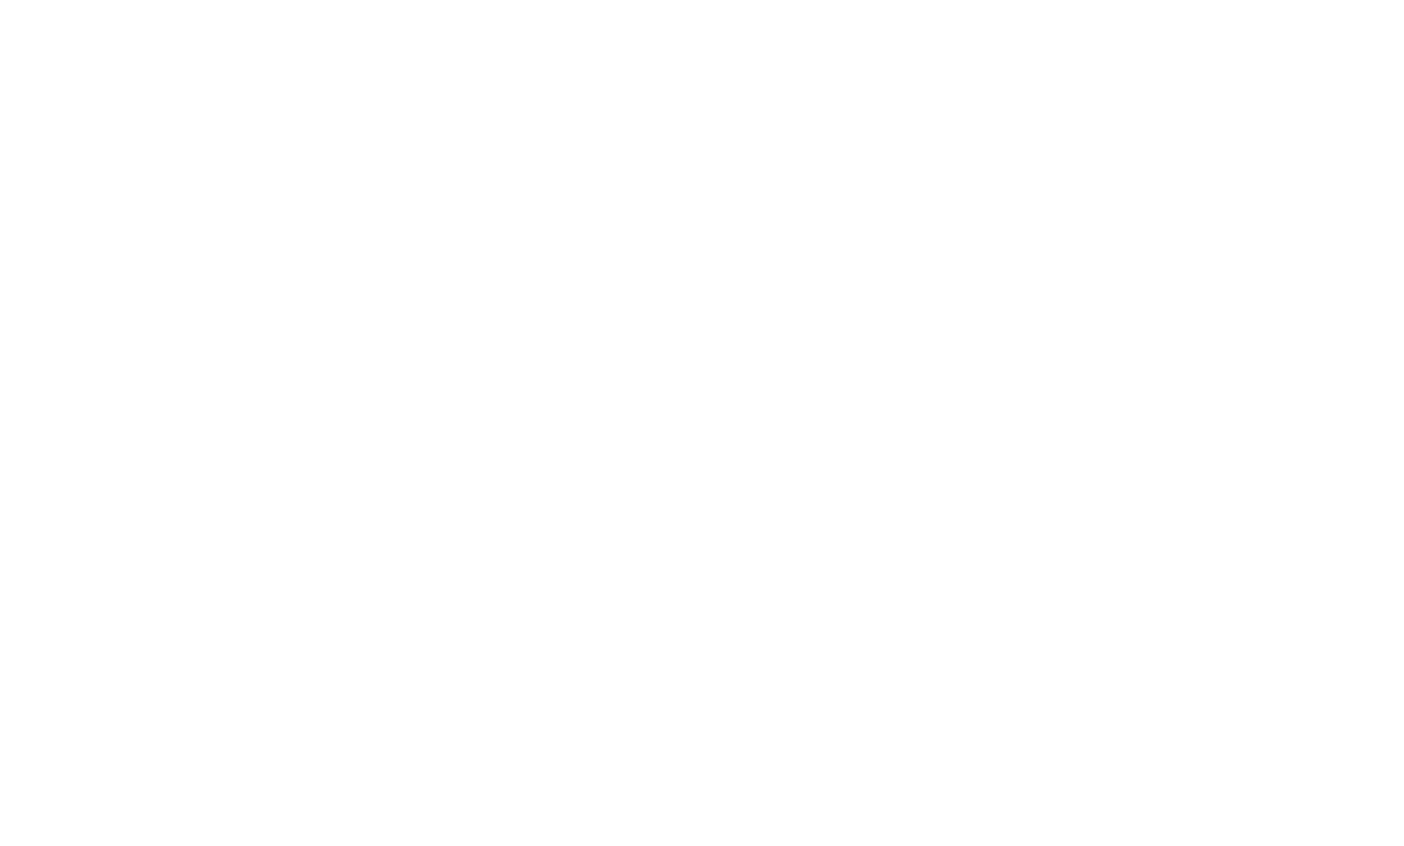 IMC TM